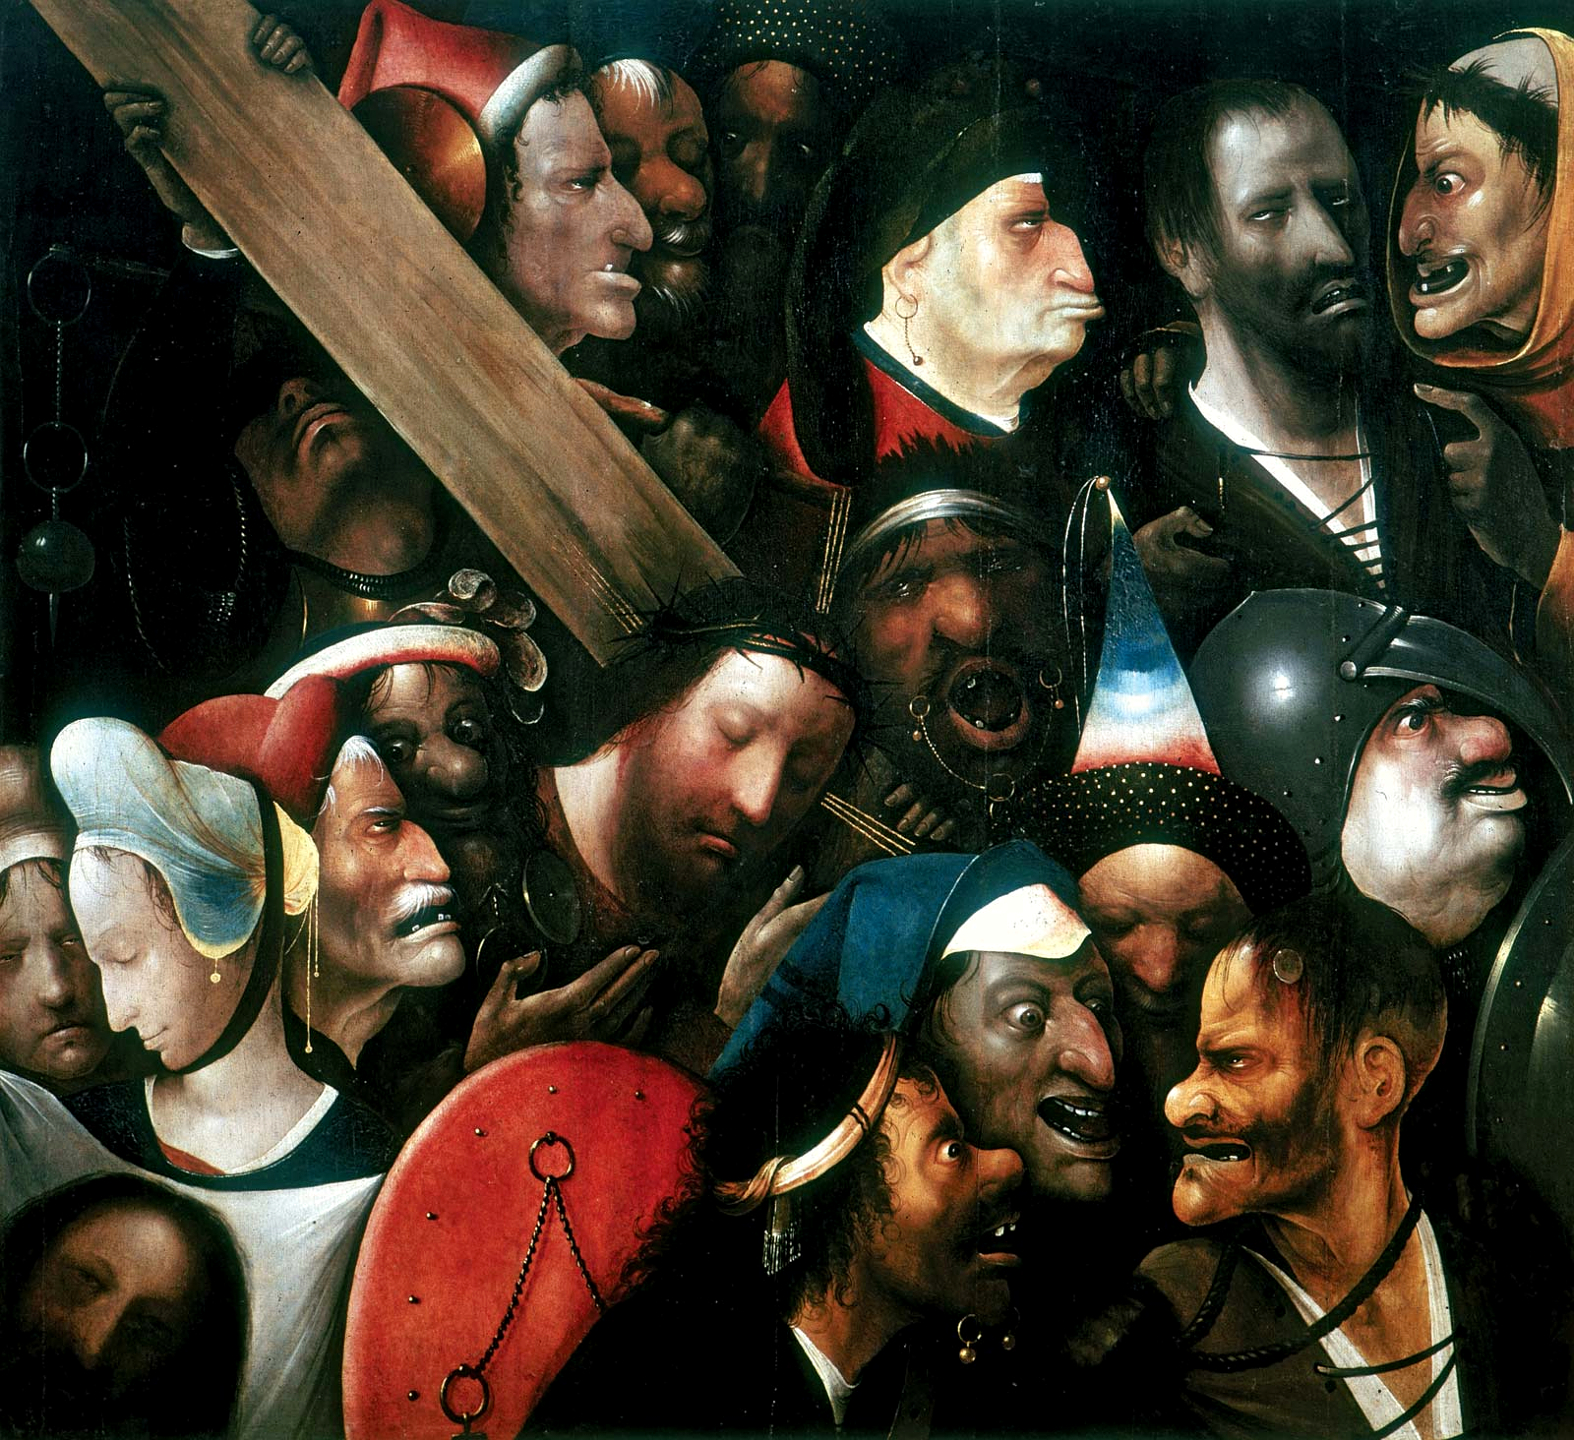 Le Christ portant la croix by Hieronymus Bosch - c.1510 Museum voor Schone Kunsten Gent